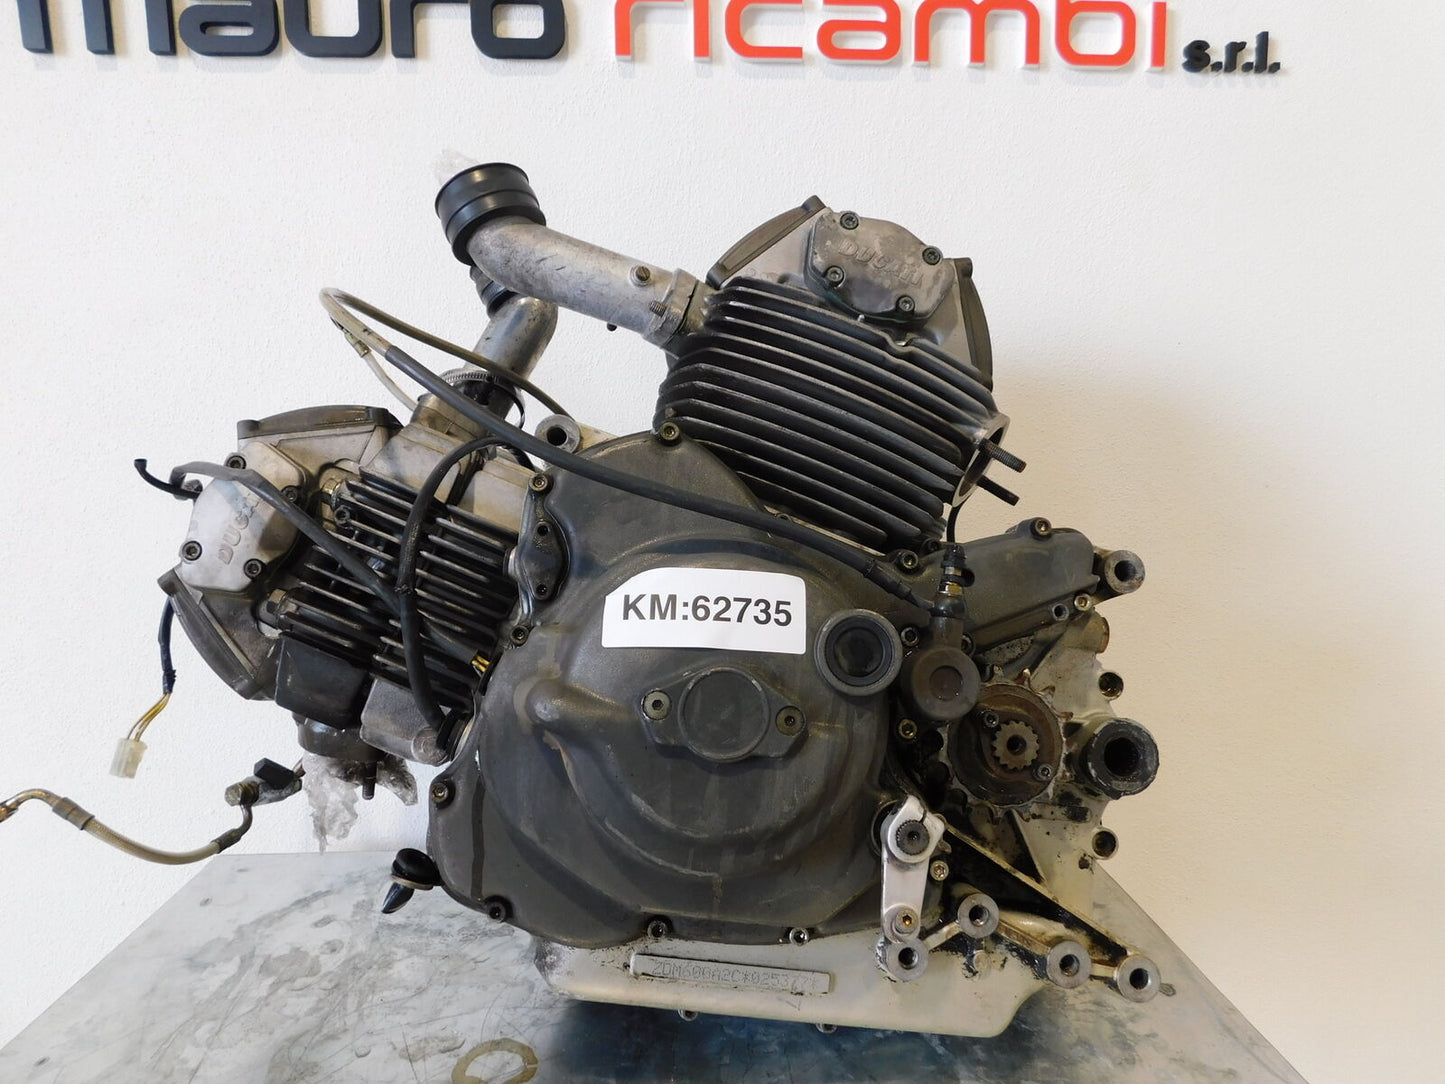 Motore Blocco Completo Ducati Monster 600 1994 2002